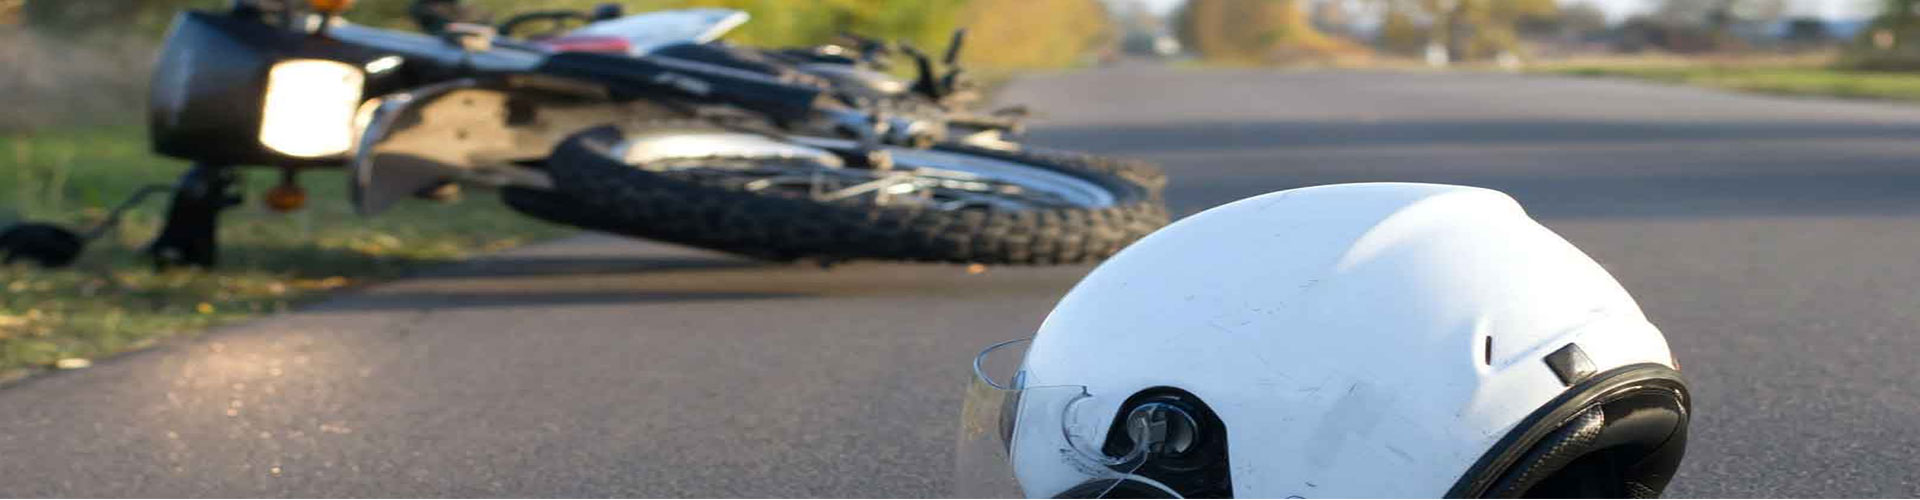 Accidente de motocicleta en Los Ángeles: reclamo por daños, causas y lesiones personales